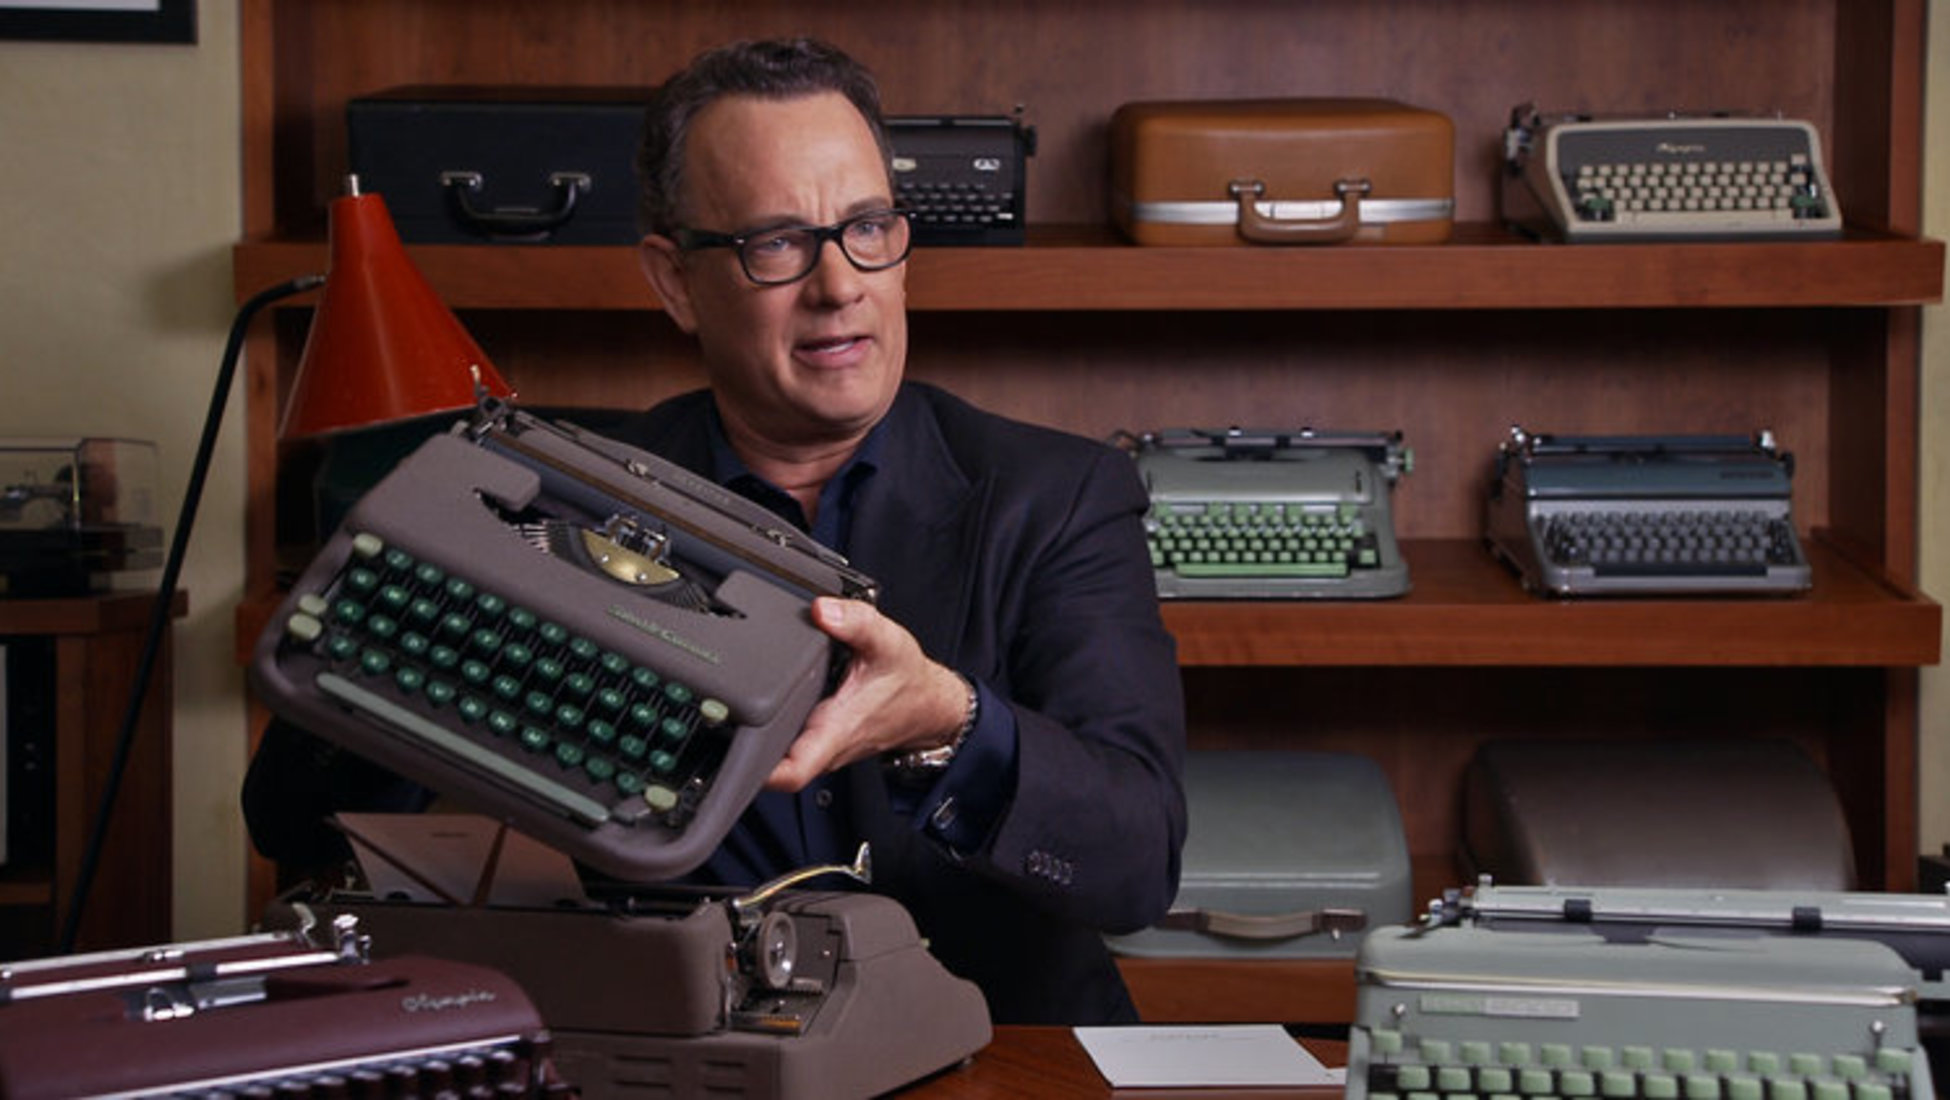 Cuáles son las mejores máquinas de escribir de la historia? - El Blog de  CaixaBank